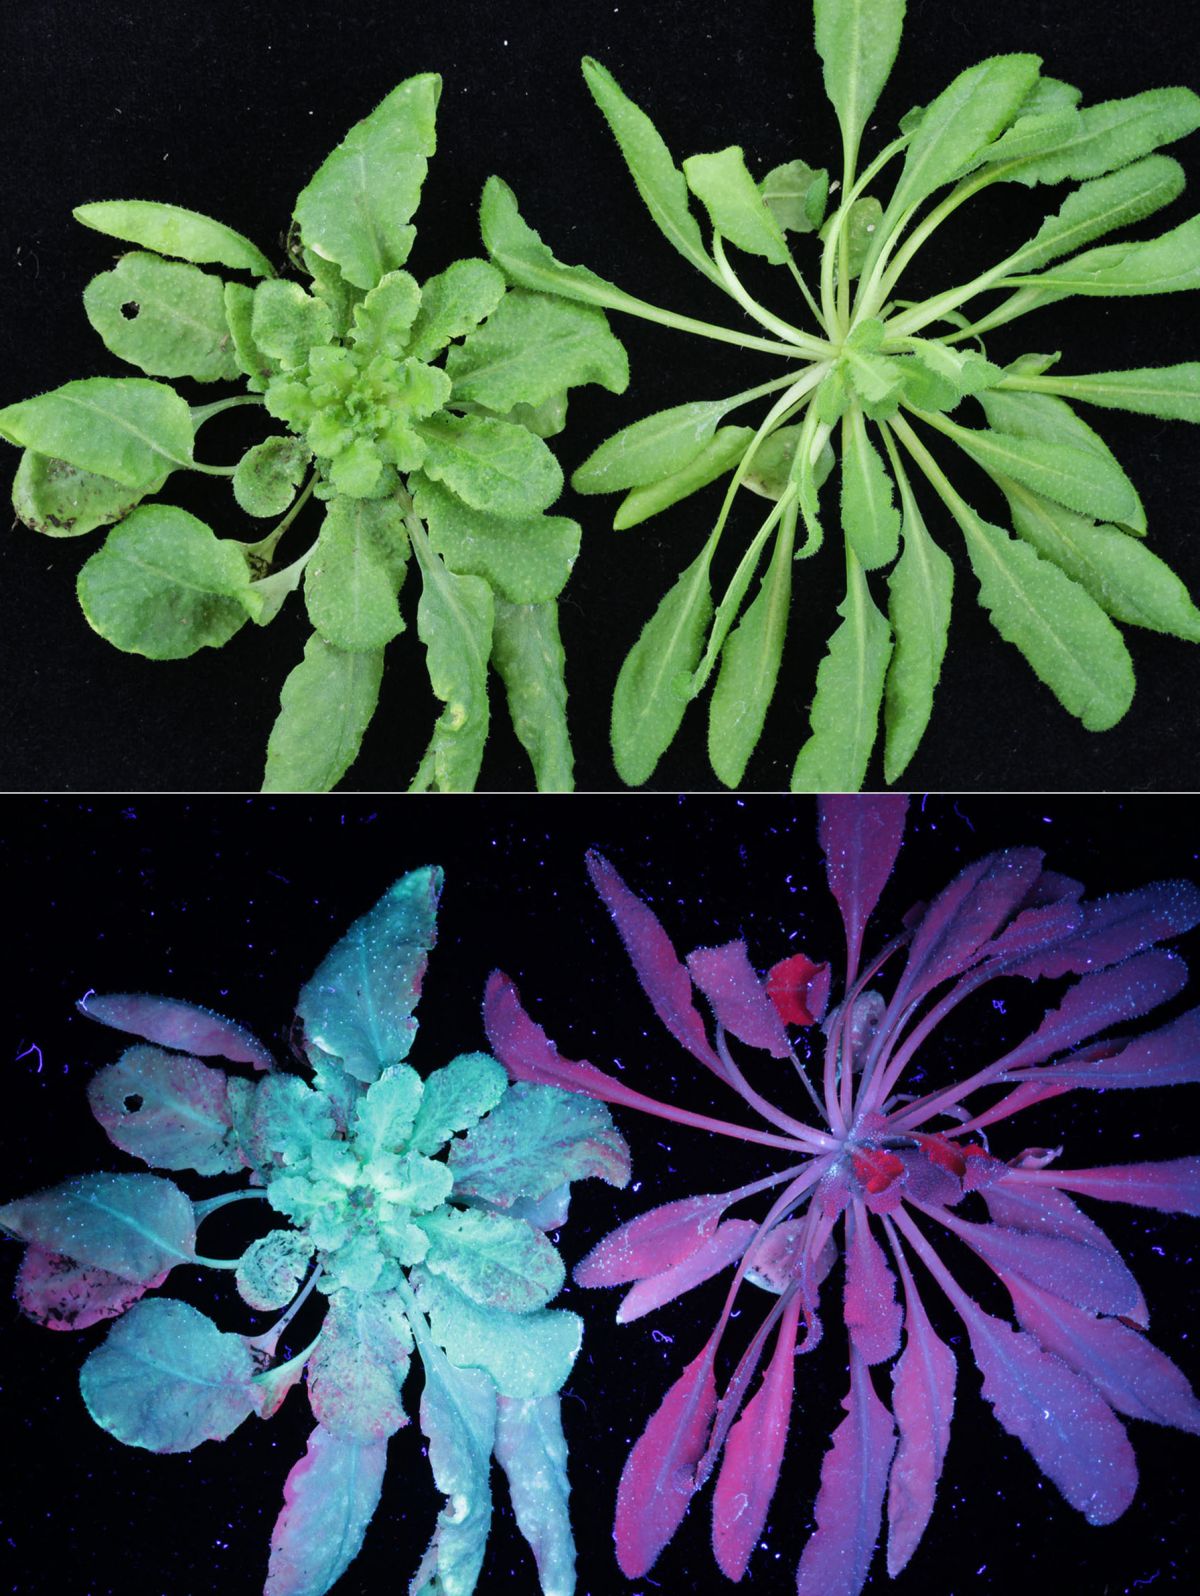 Hier sind zwei Arabidopsis-Pflanzen zu sehen, die in der Studie verwendet wurden. Unter UV-Licht (unten) erkennt man, dass die linke Pflanze von einem Virus befallen ist; die rechte Pflanze ist nicht infiziert.